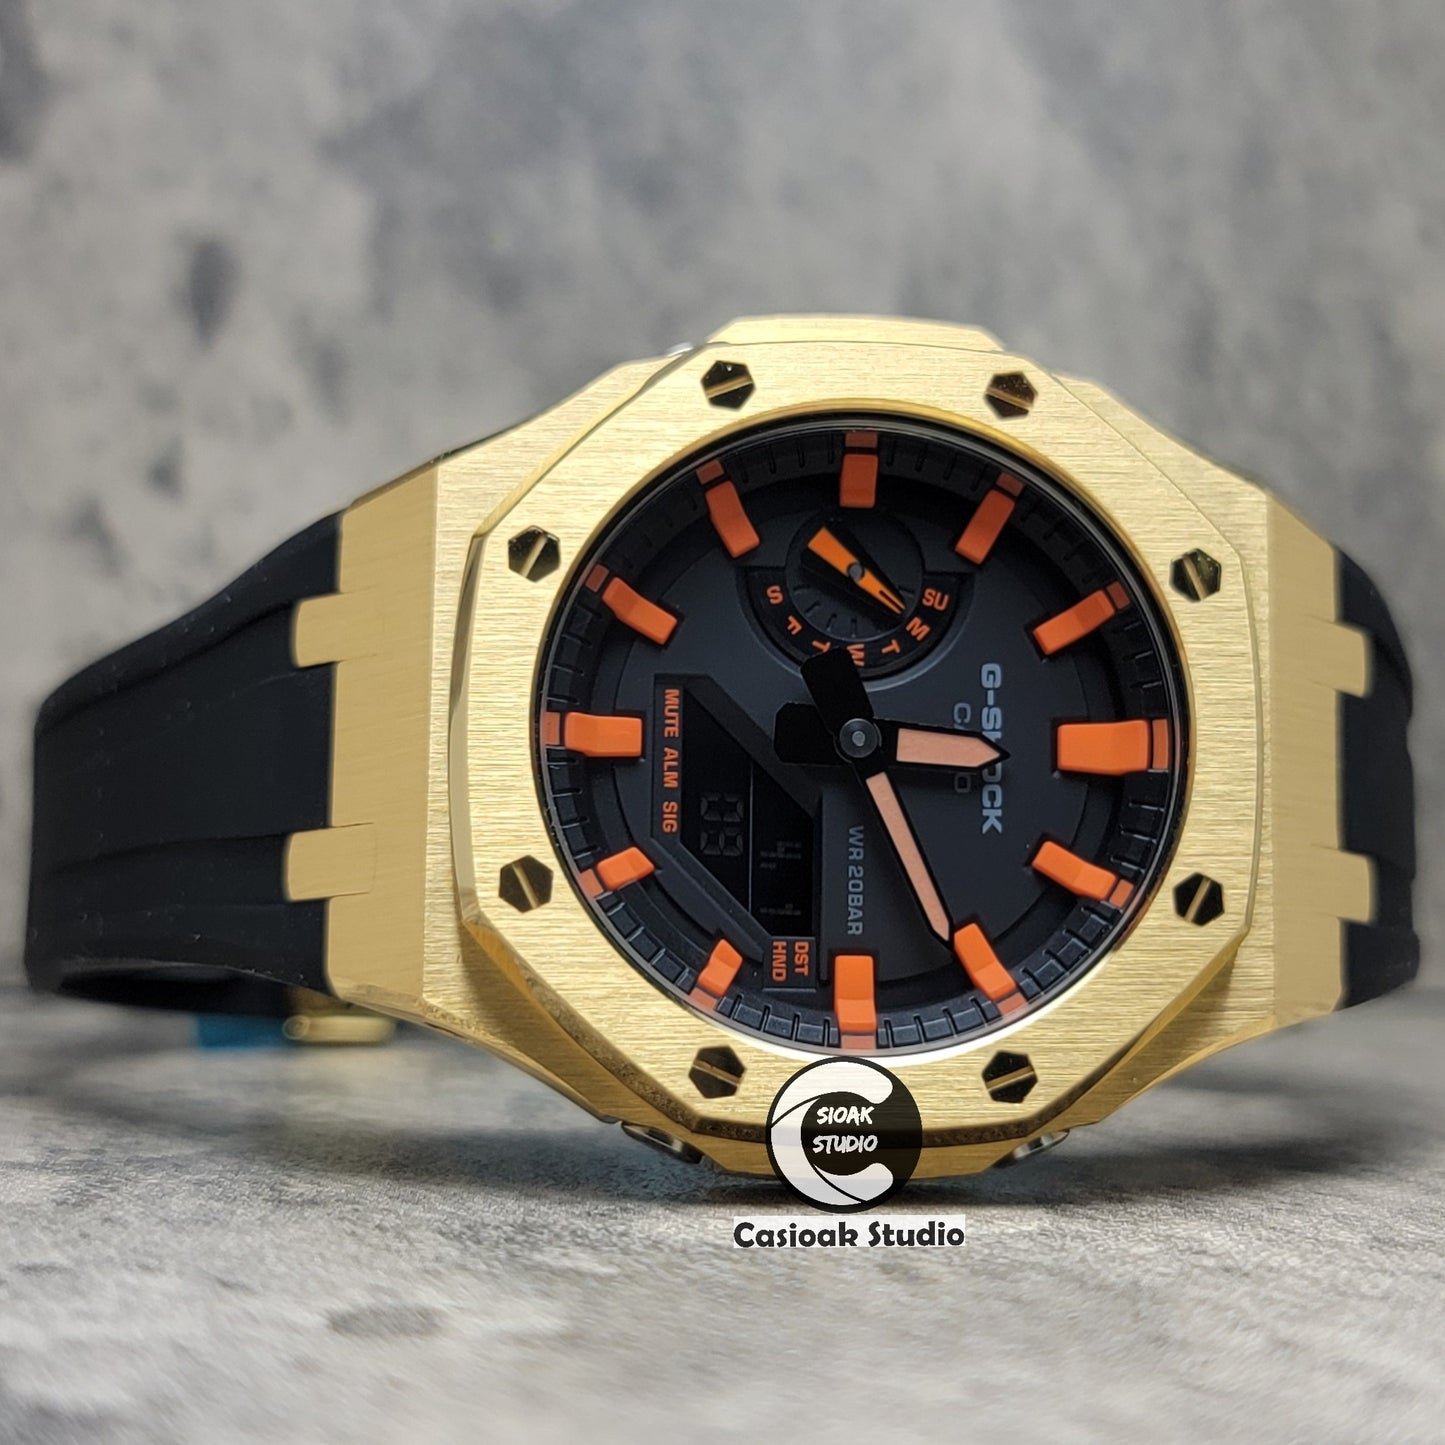 Casioak Mod Watch Gold Case Blackl Rubber Strap Black Orange Time Mark Black Dial 44mm - Casioak Studio